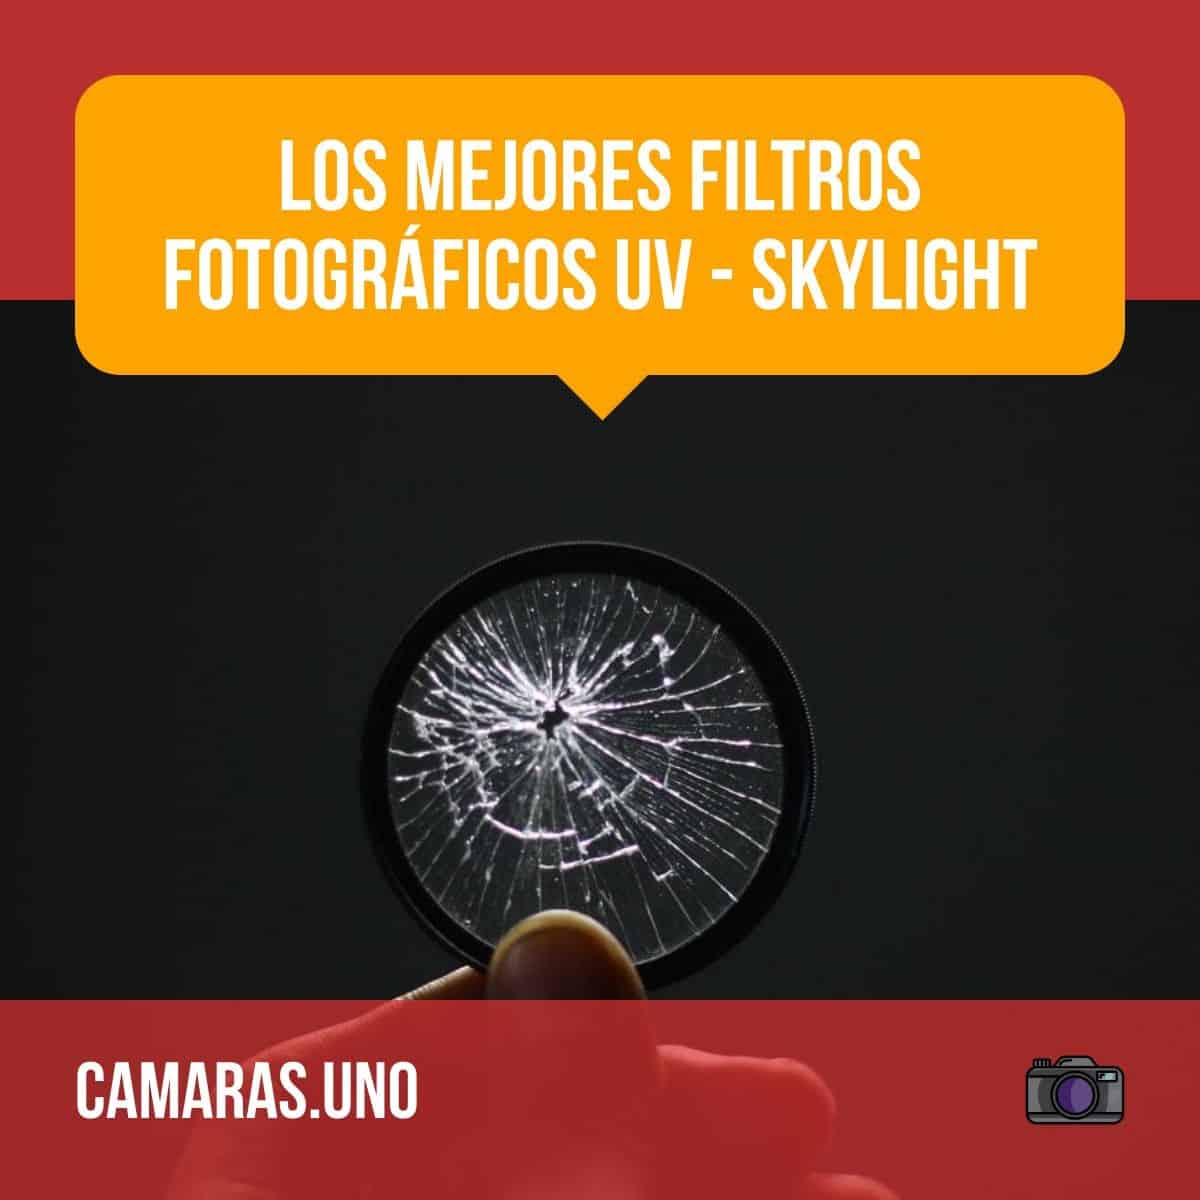 Los mejores filtros fotográficos UV - Skylight: ¿Por qué tu lente todavía necesita uno en la era de Photoshop?